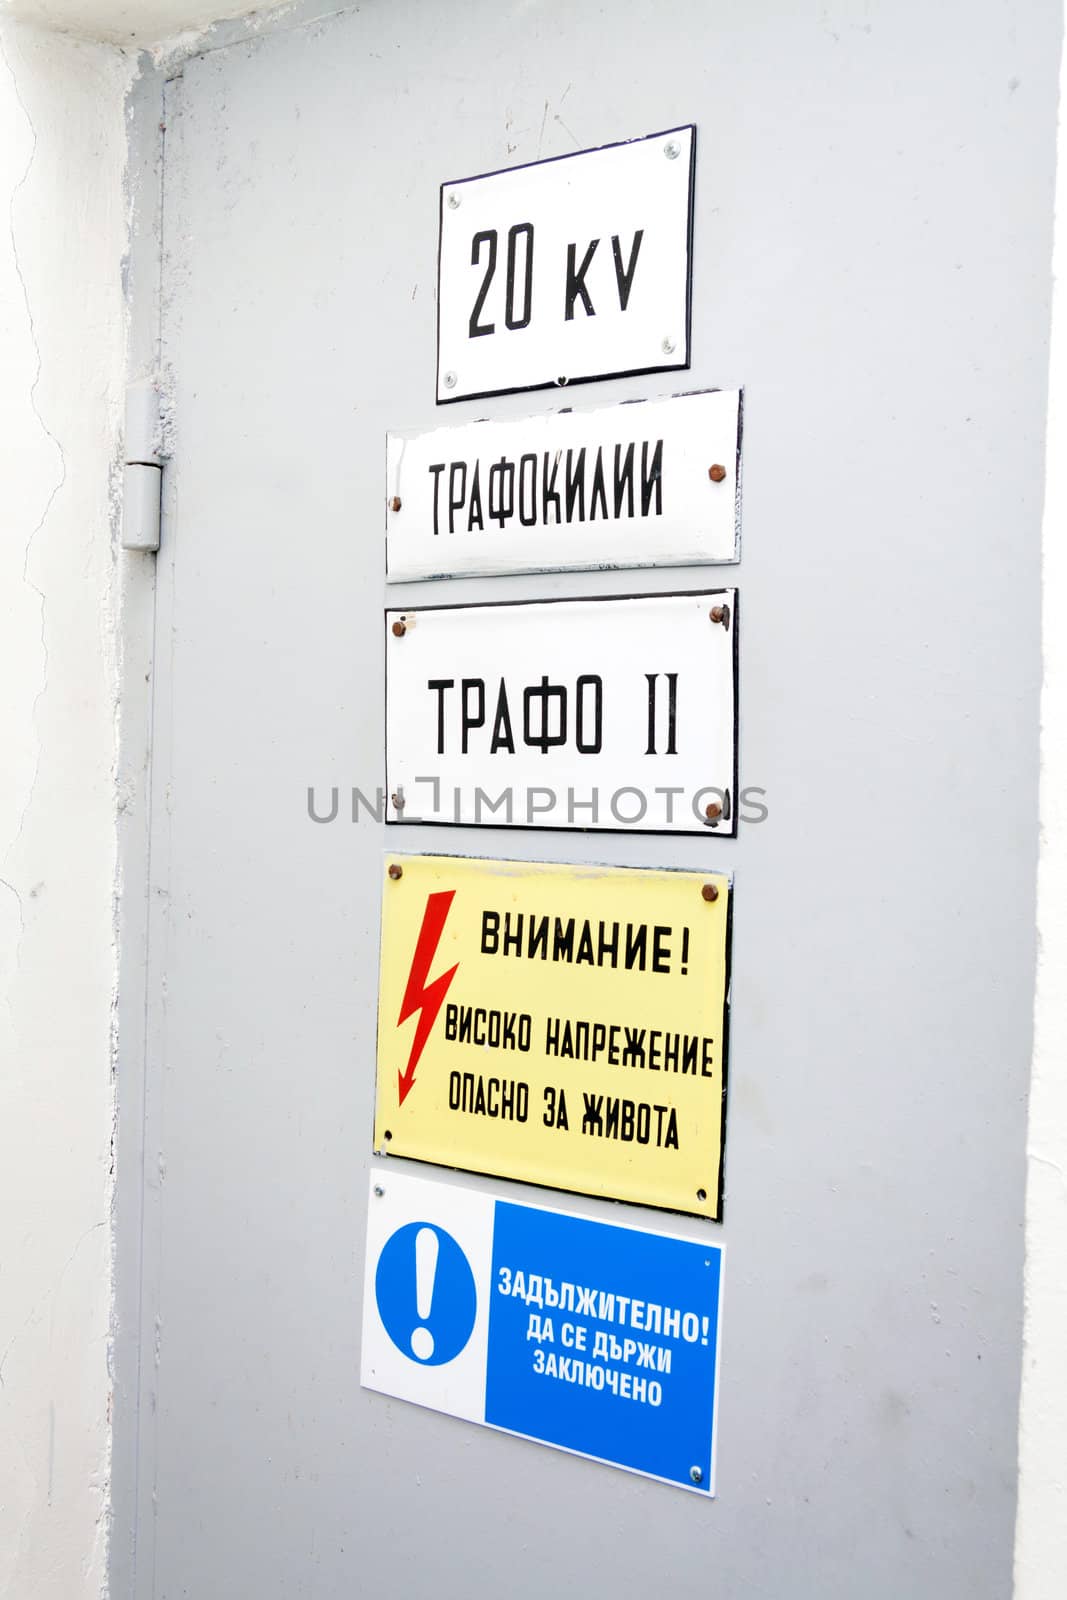 Metal door with high voltage warning sign